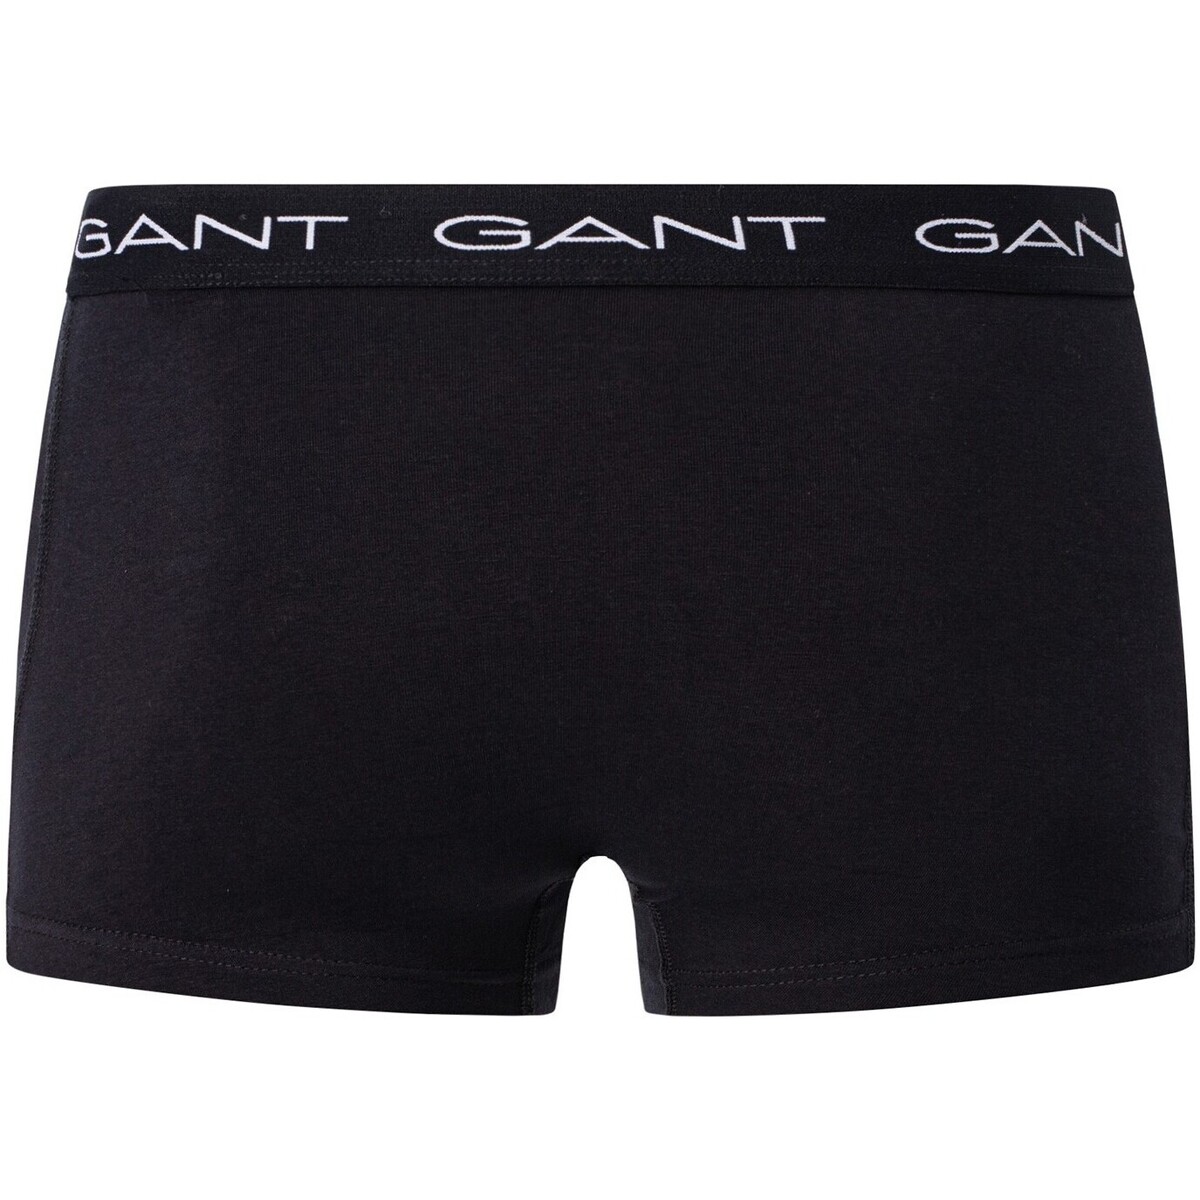 Gant Noir Lot de 5 boxers Essentials unXm5GzL